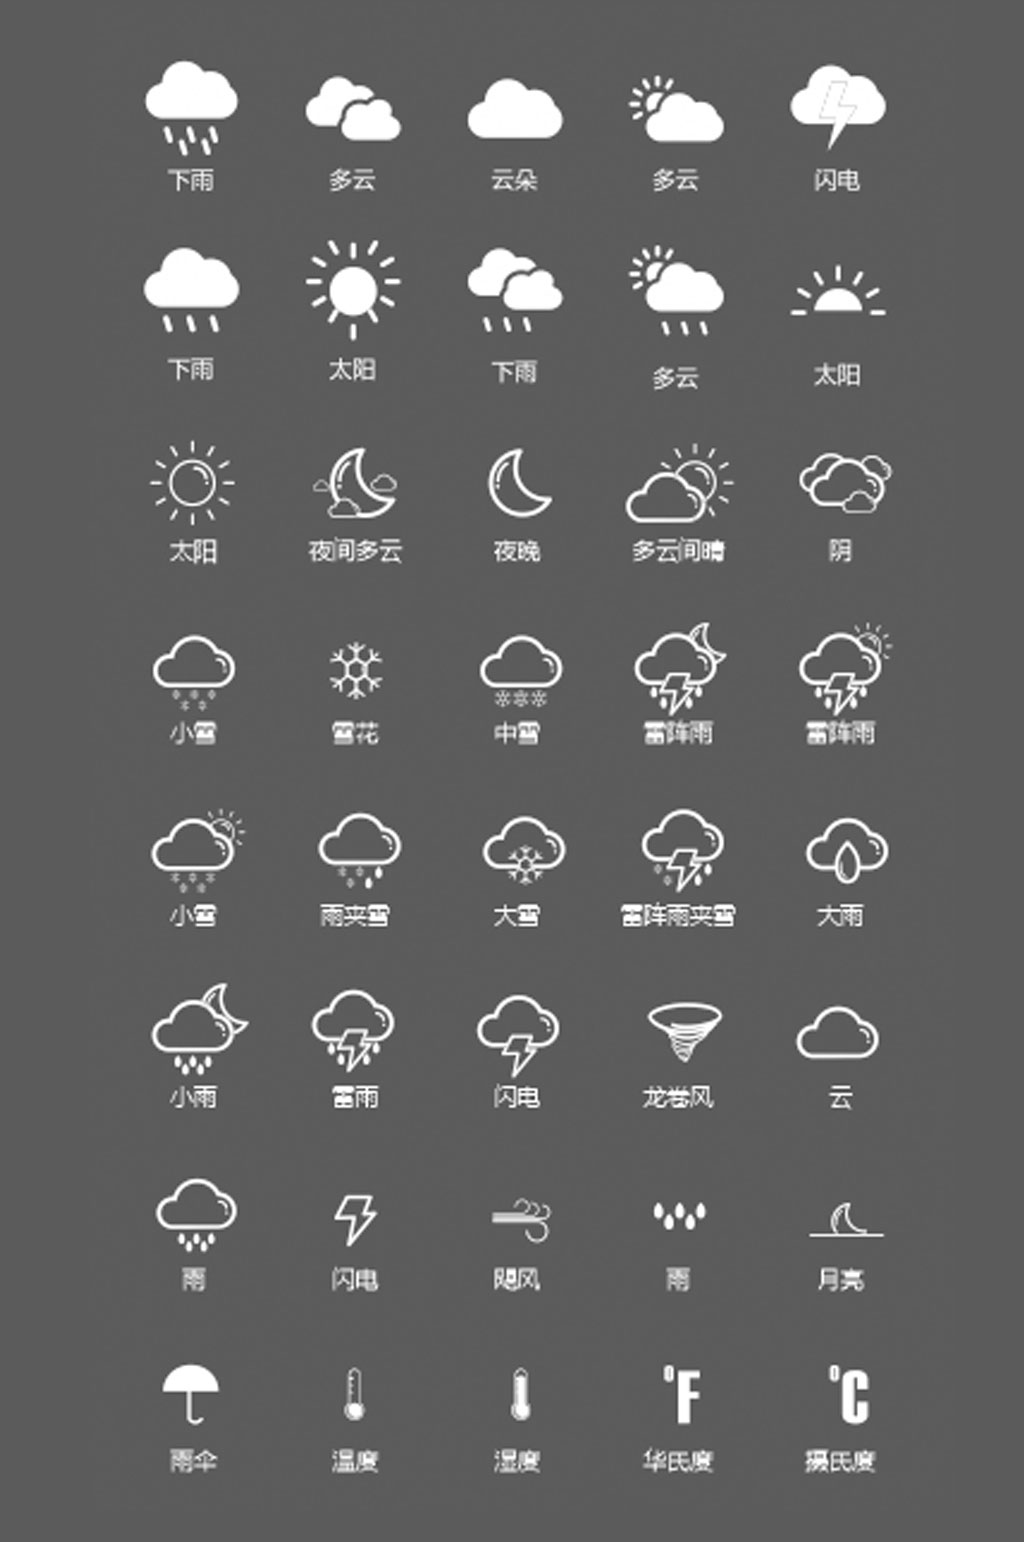 天气预报雨的符号图片